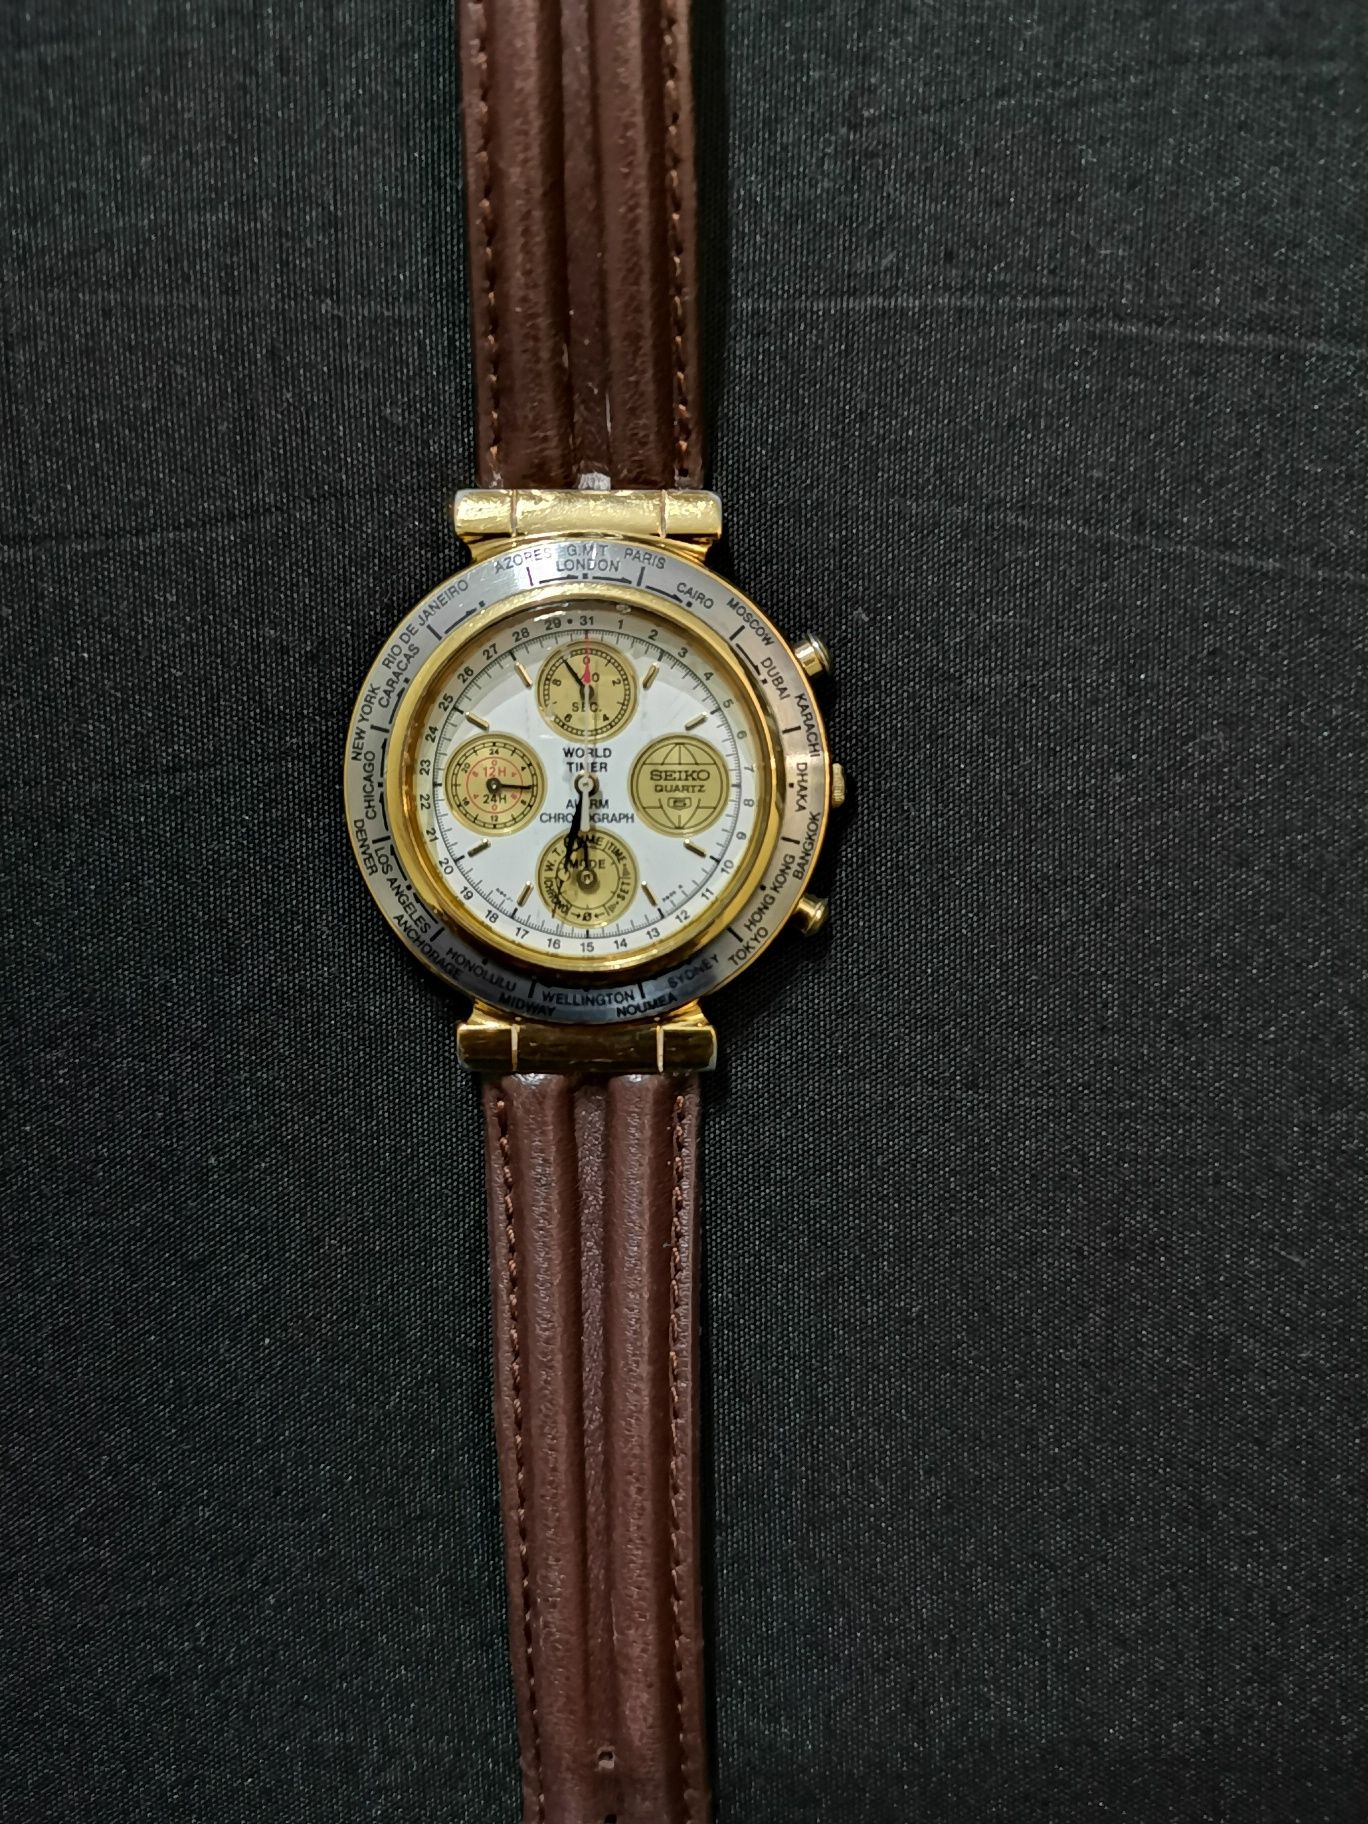 Relógio Seyko World Timer